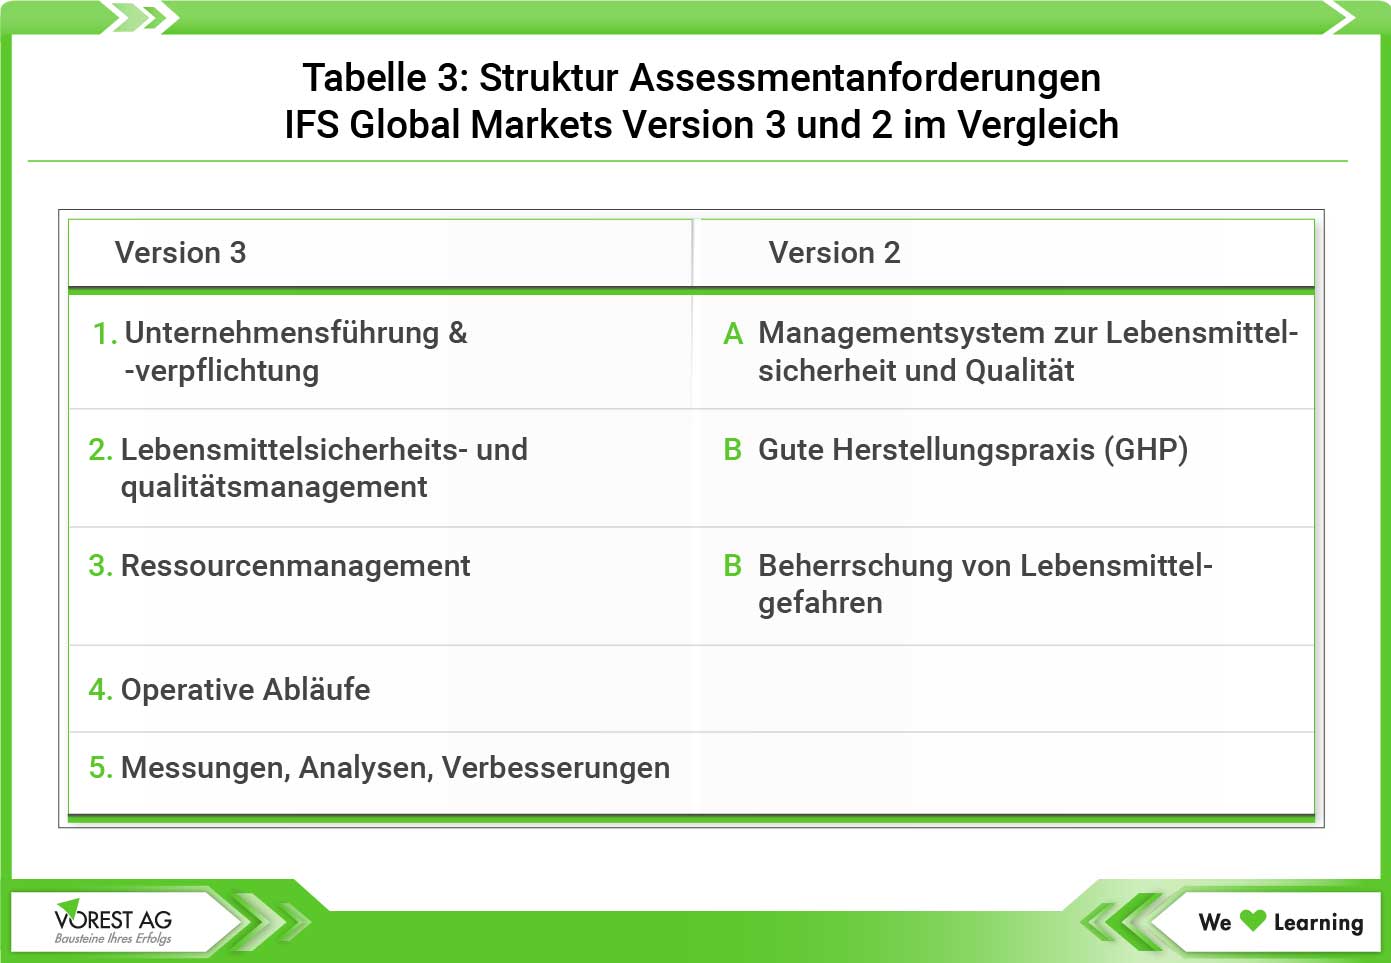 Struktur Assessmentanforderungen IFS Global Markets Version 3 und 2 im Vergleich